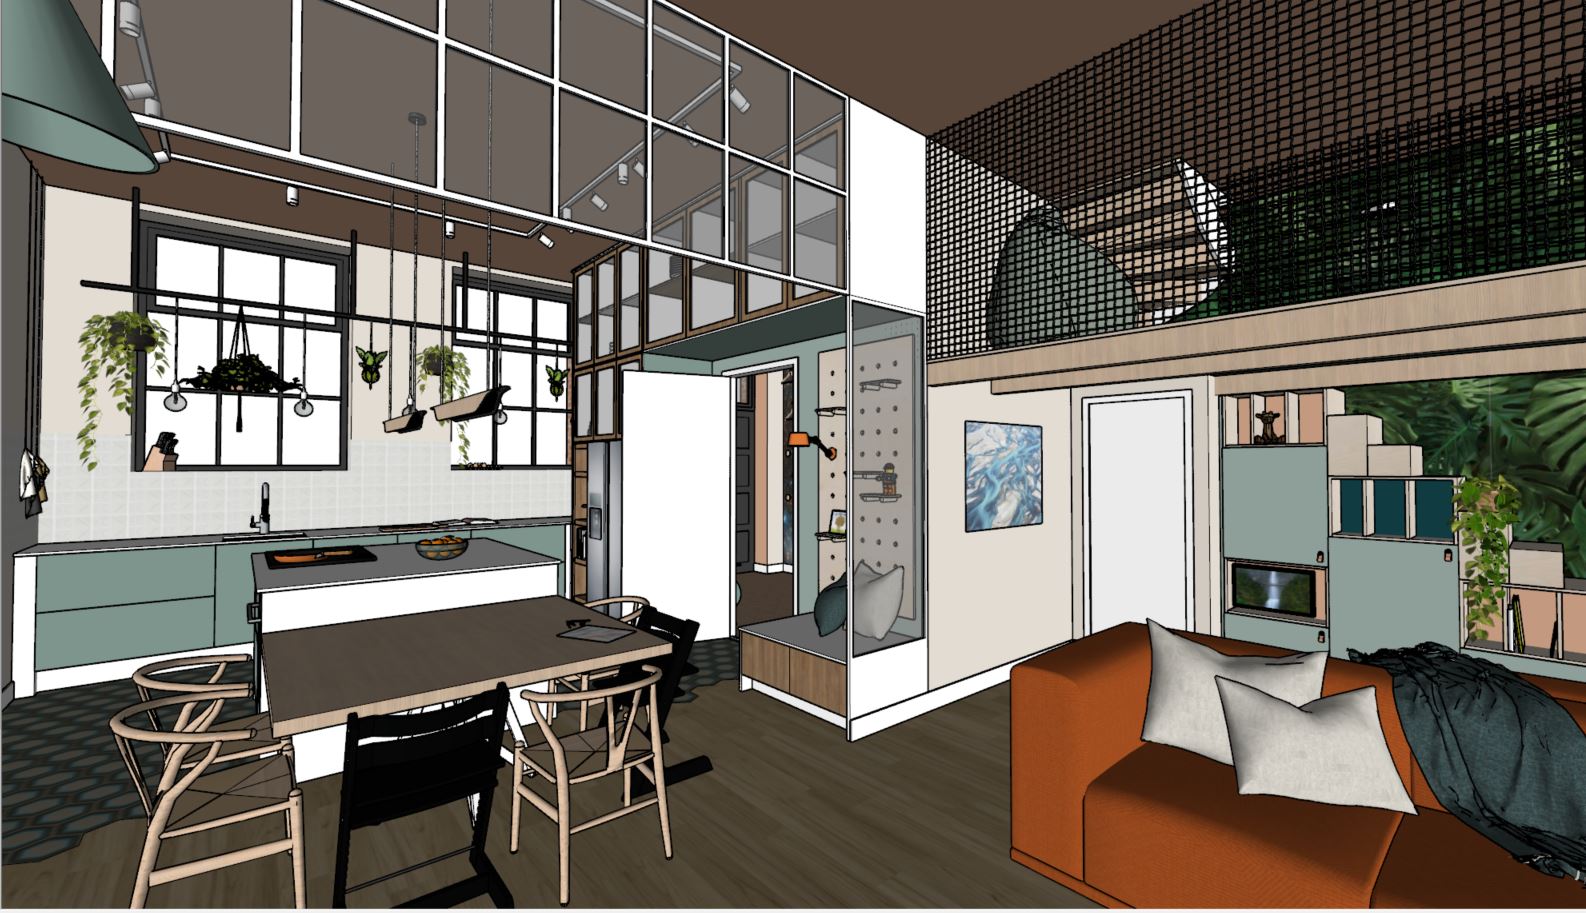 3D interieurontwerp, indelingsontwerp, keukenontwerp en heel veel maatwerk voor een nieuwbouwwoning op Enka in Ede